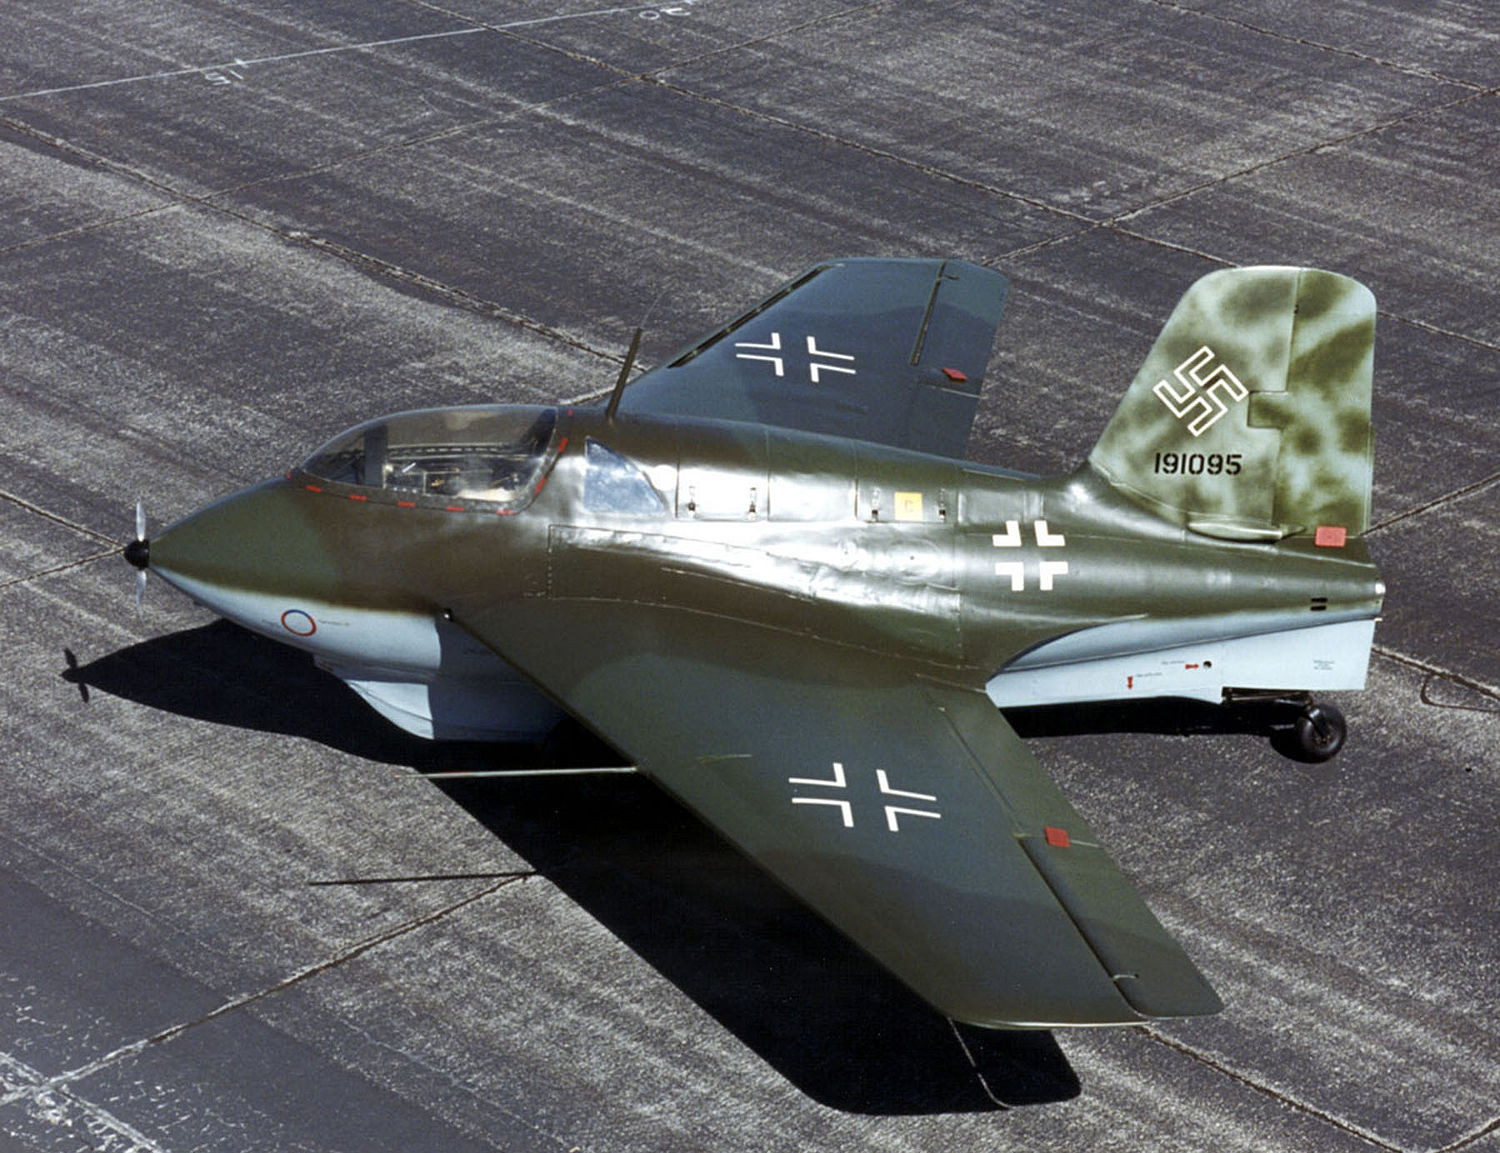 Messerschmitt Me 163 Komet